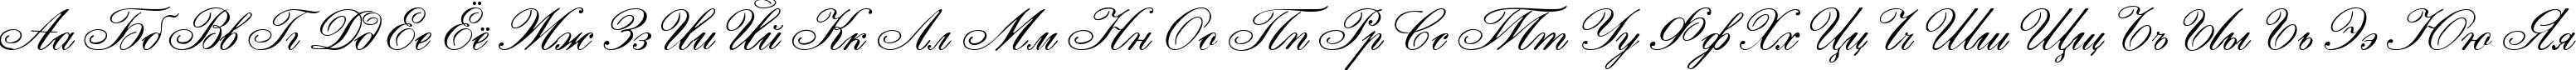 Пример написания русского алфавита шрифтом English Script